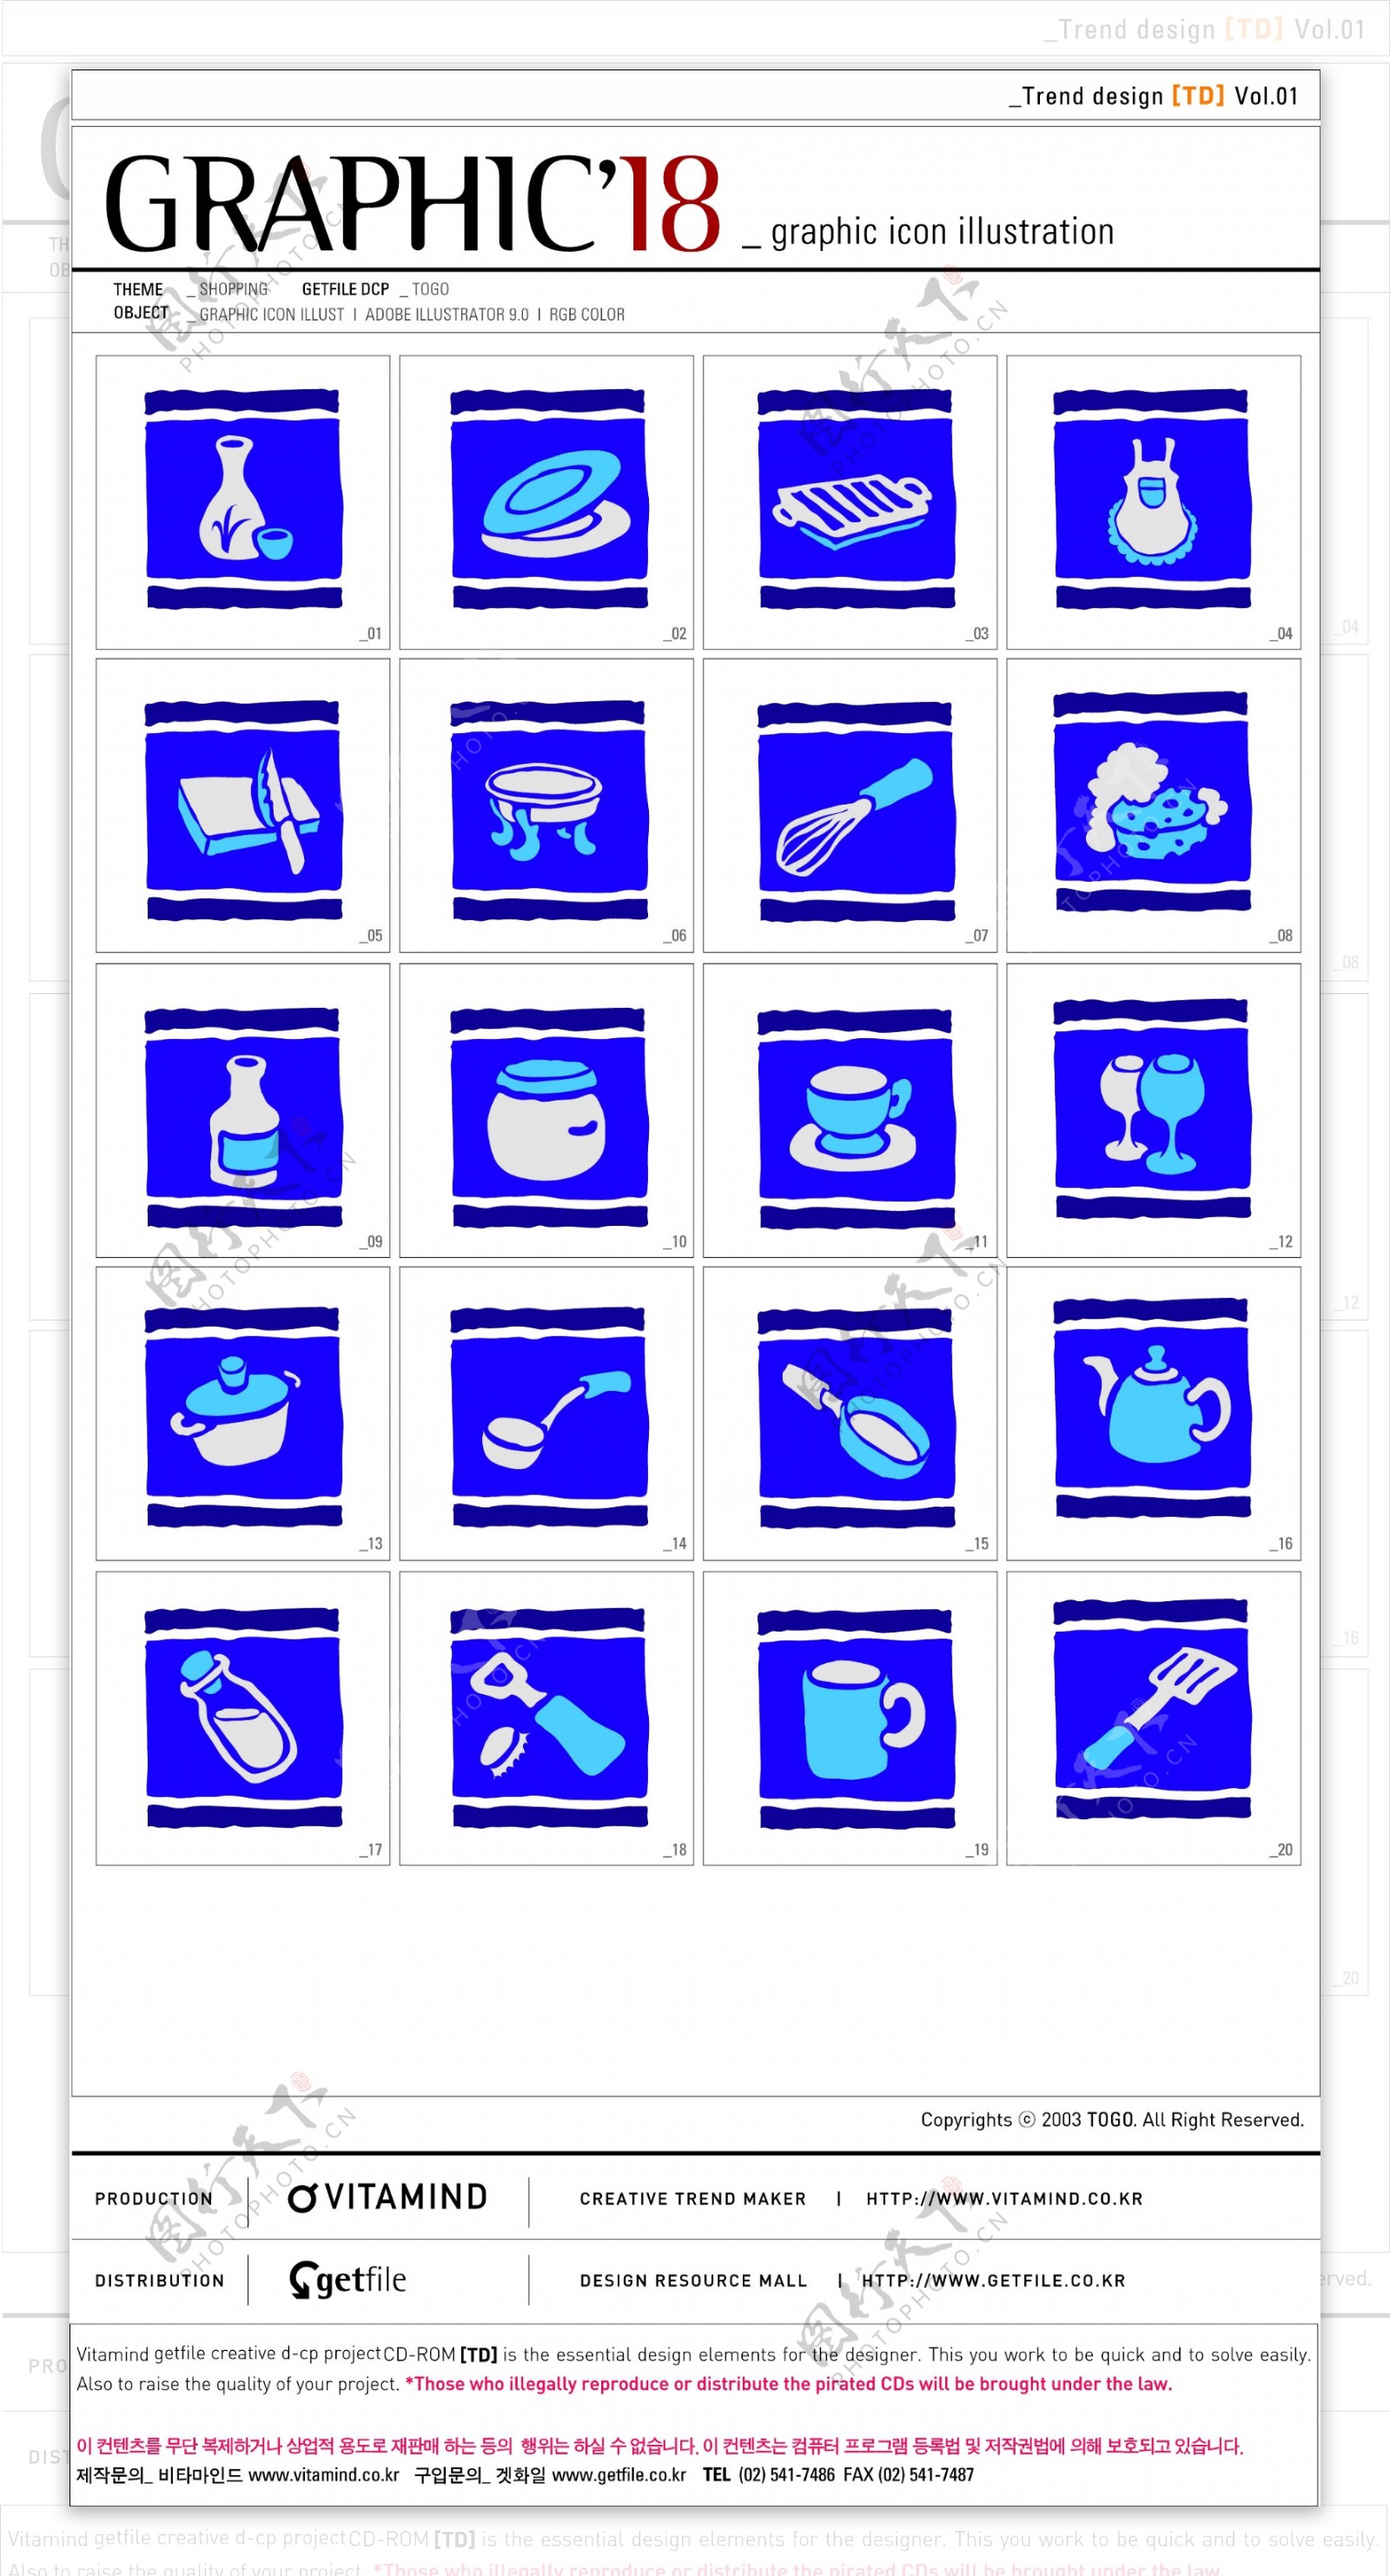 GRAPHIC厨房餐具系列矢量图标